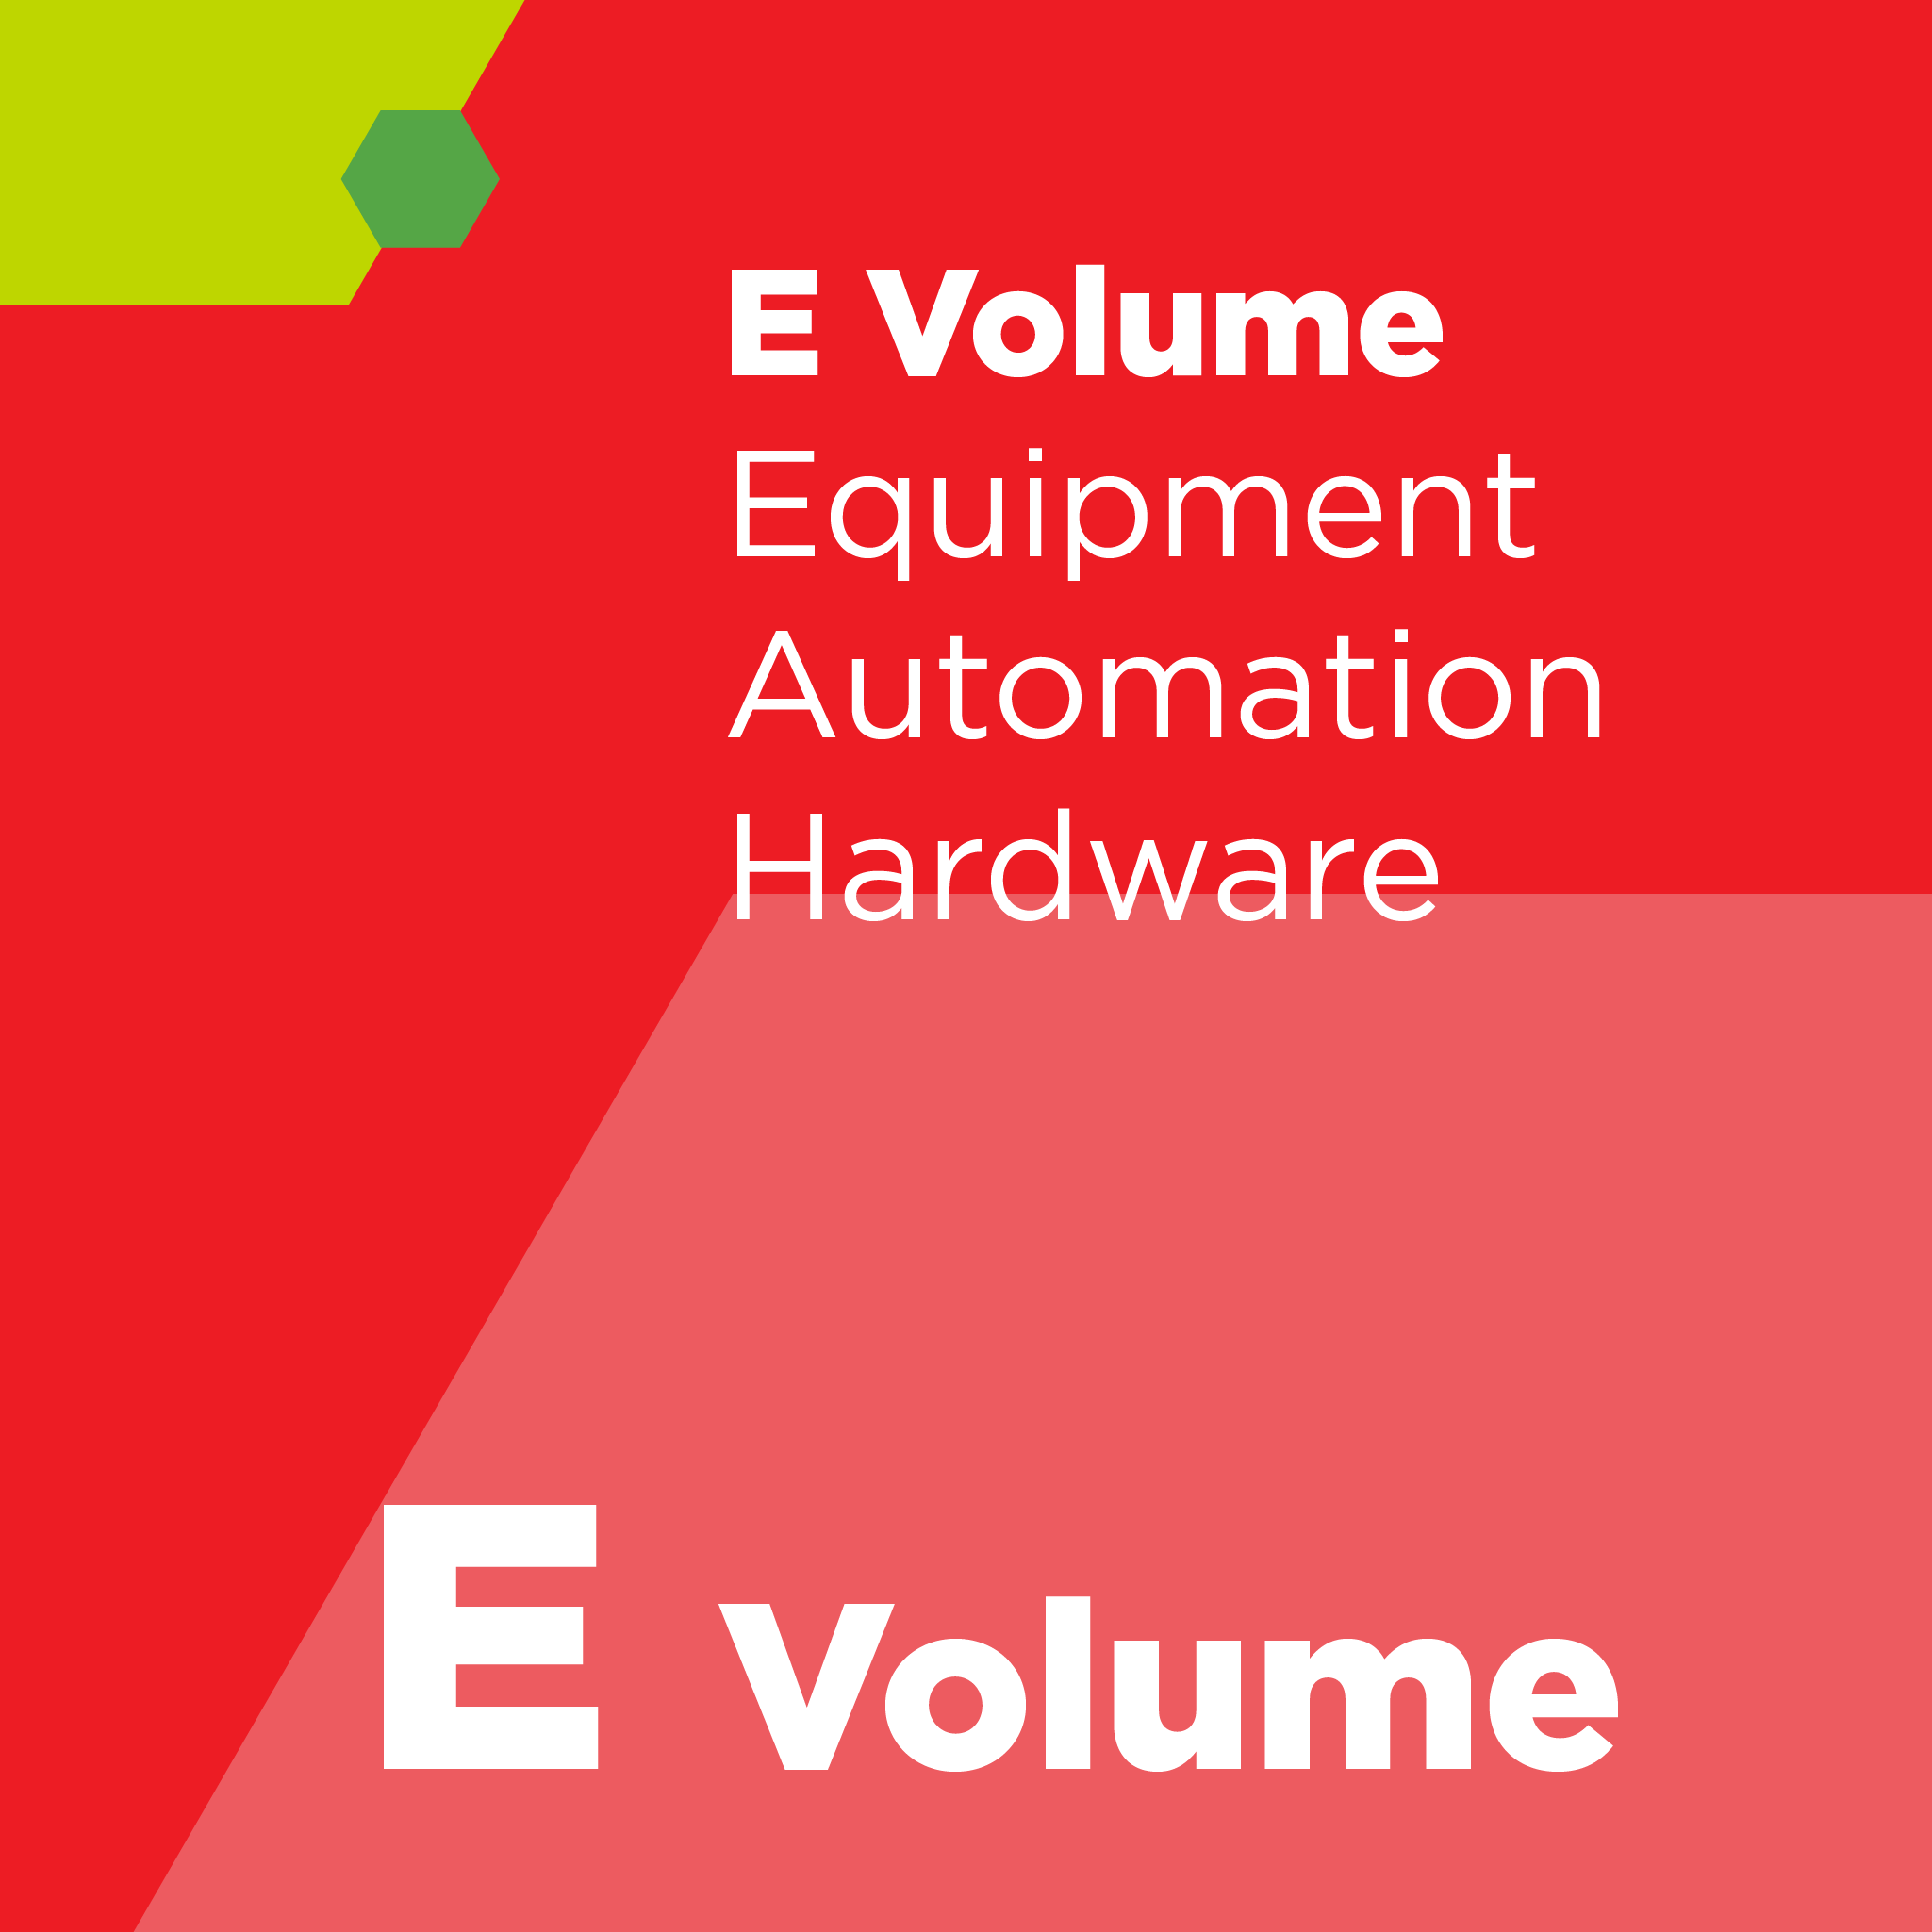 E07800 - SEMI E78 - 装置のための静電気放電（ESD）と静電気吸着（ESA）の評価と管理へのガイド